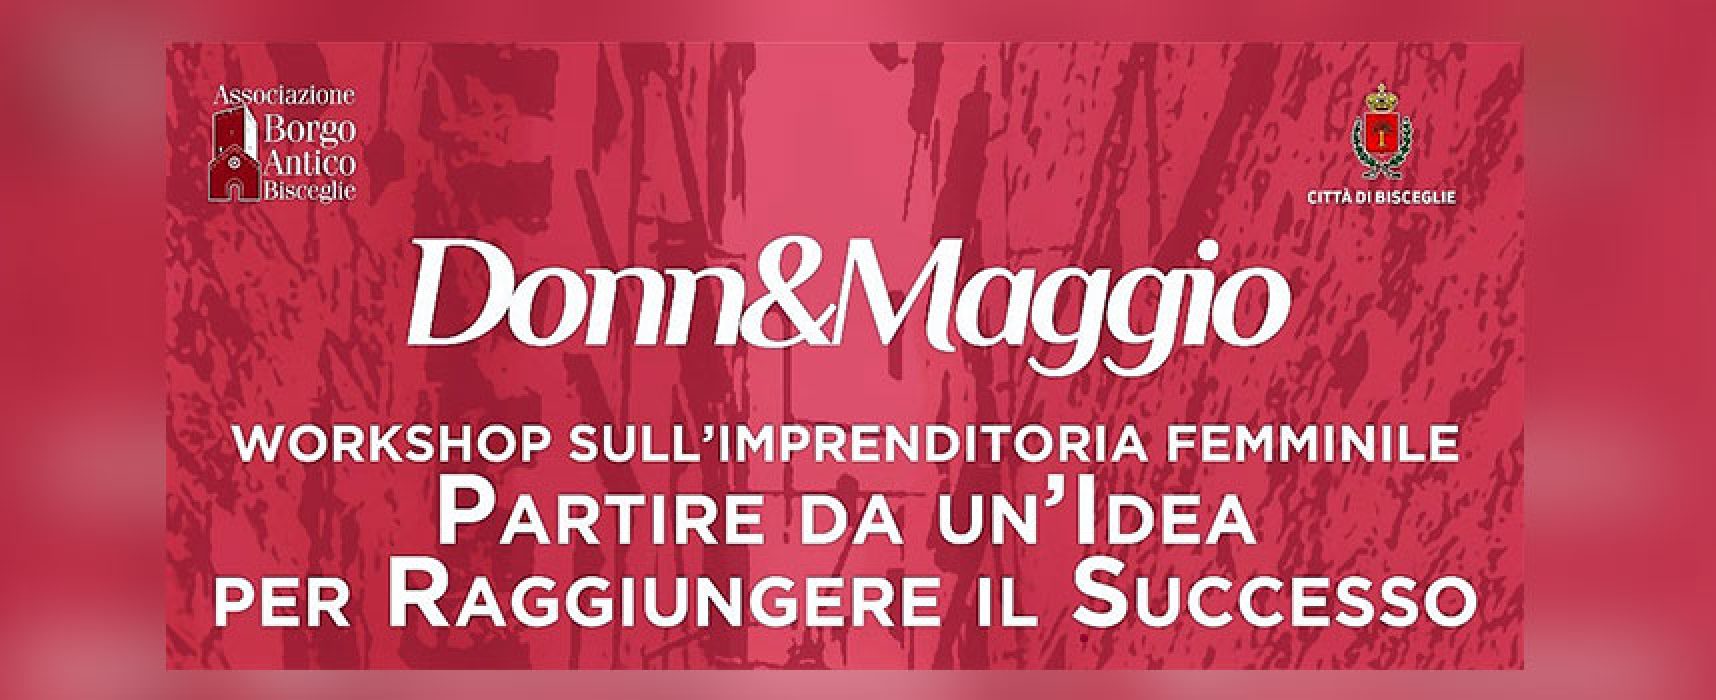 Donn&Maggio, workshop sul tema dell’imprenditoria femminile chiude l’iniziativa